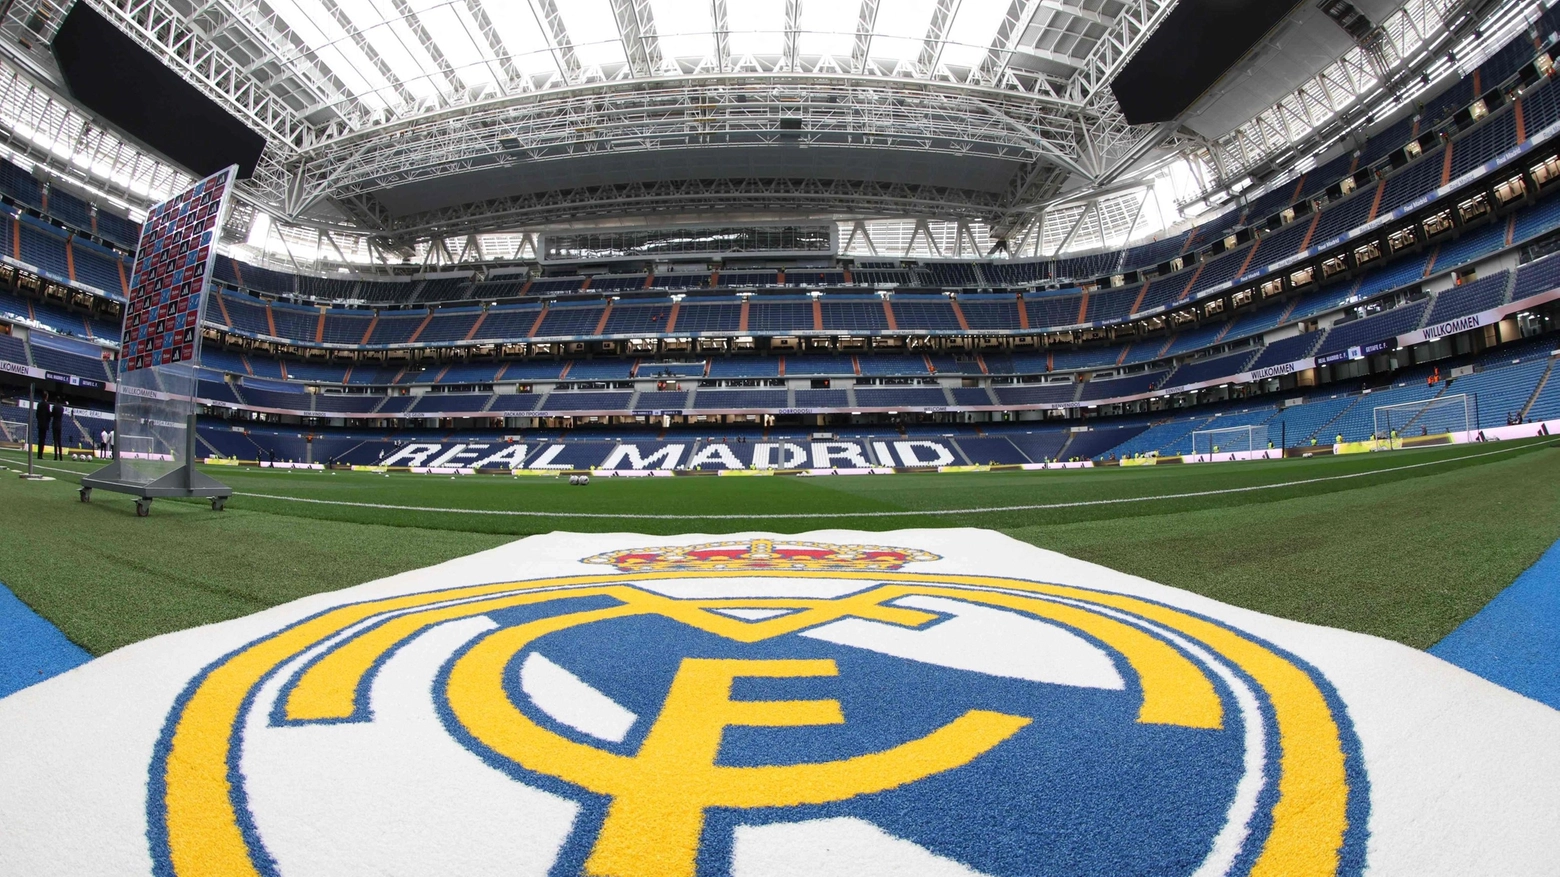 La casa del Real Madrid al primo posto secondo uno studio, davanti a Old Trafford e Camp Nou, San Siro soltanto ottavo